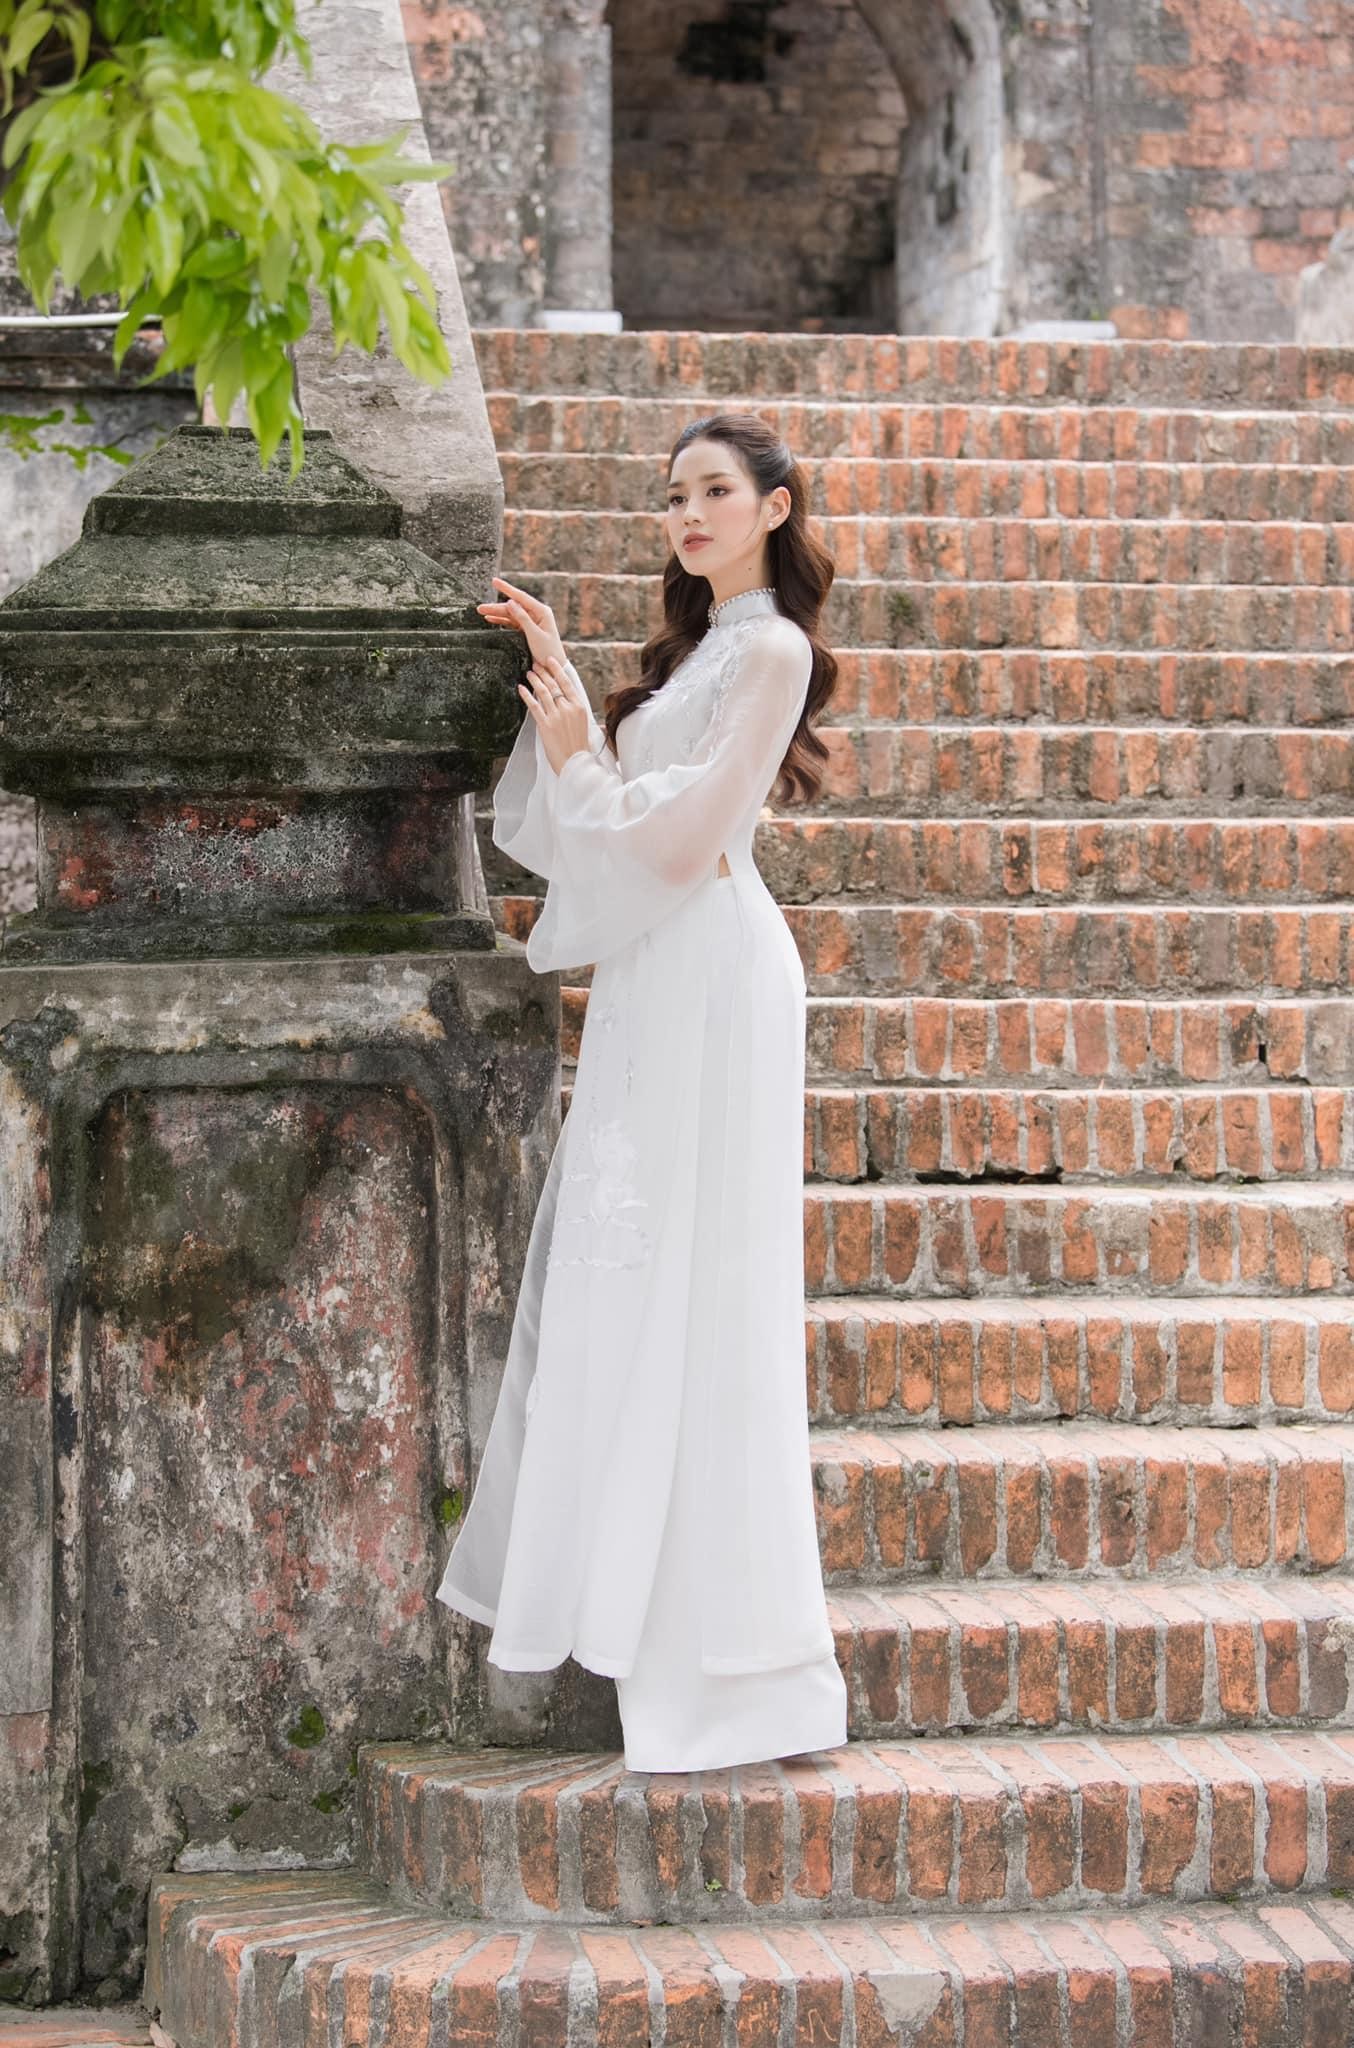 Hoa hậu Đỗ Thị Hà đẹp thuần khiết với áo dài trắng-6